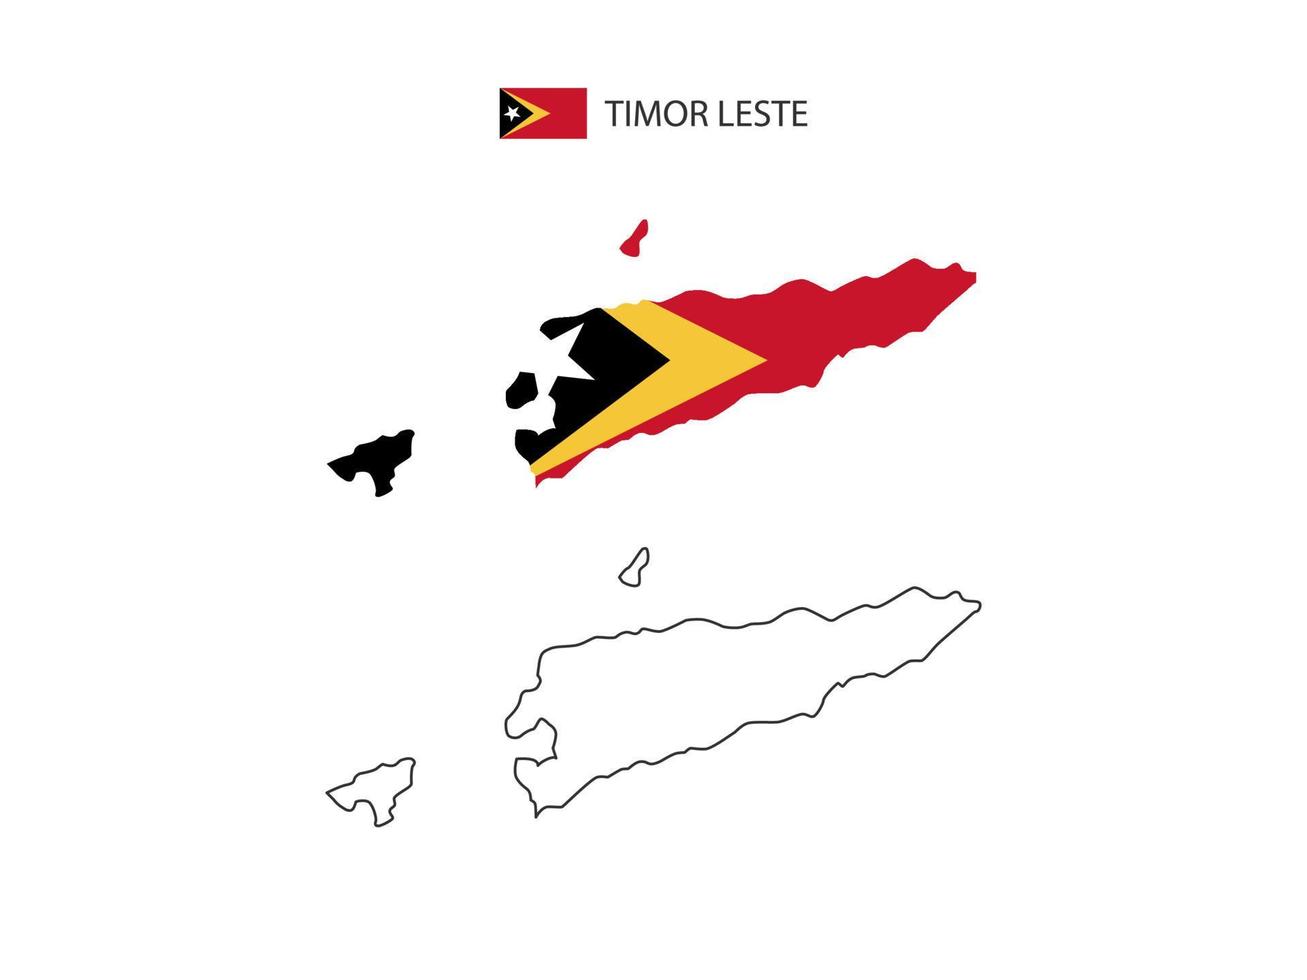 Timor-Leste-Karte Stadtvektor geteilt durch Umriss-Einfachheitsstil. haben 2 Versionen, eine schwarze Version mit dünner Linie und eine Version in der Farbe der Landesflagge. beide Karten waren auf dem weißen Hintergrund. vektor